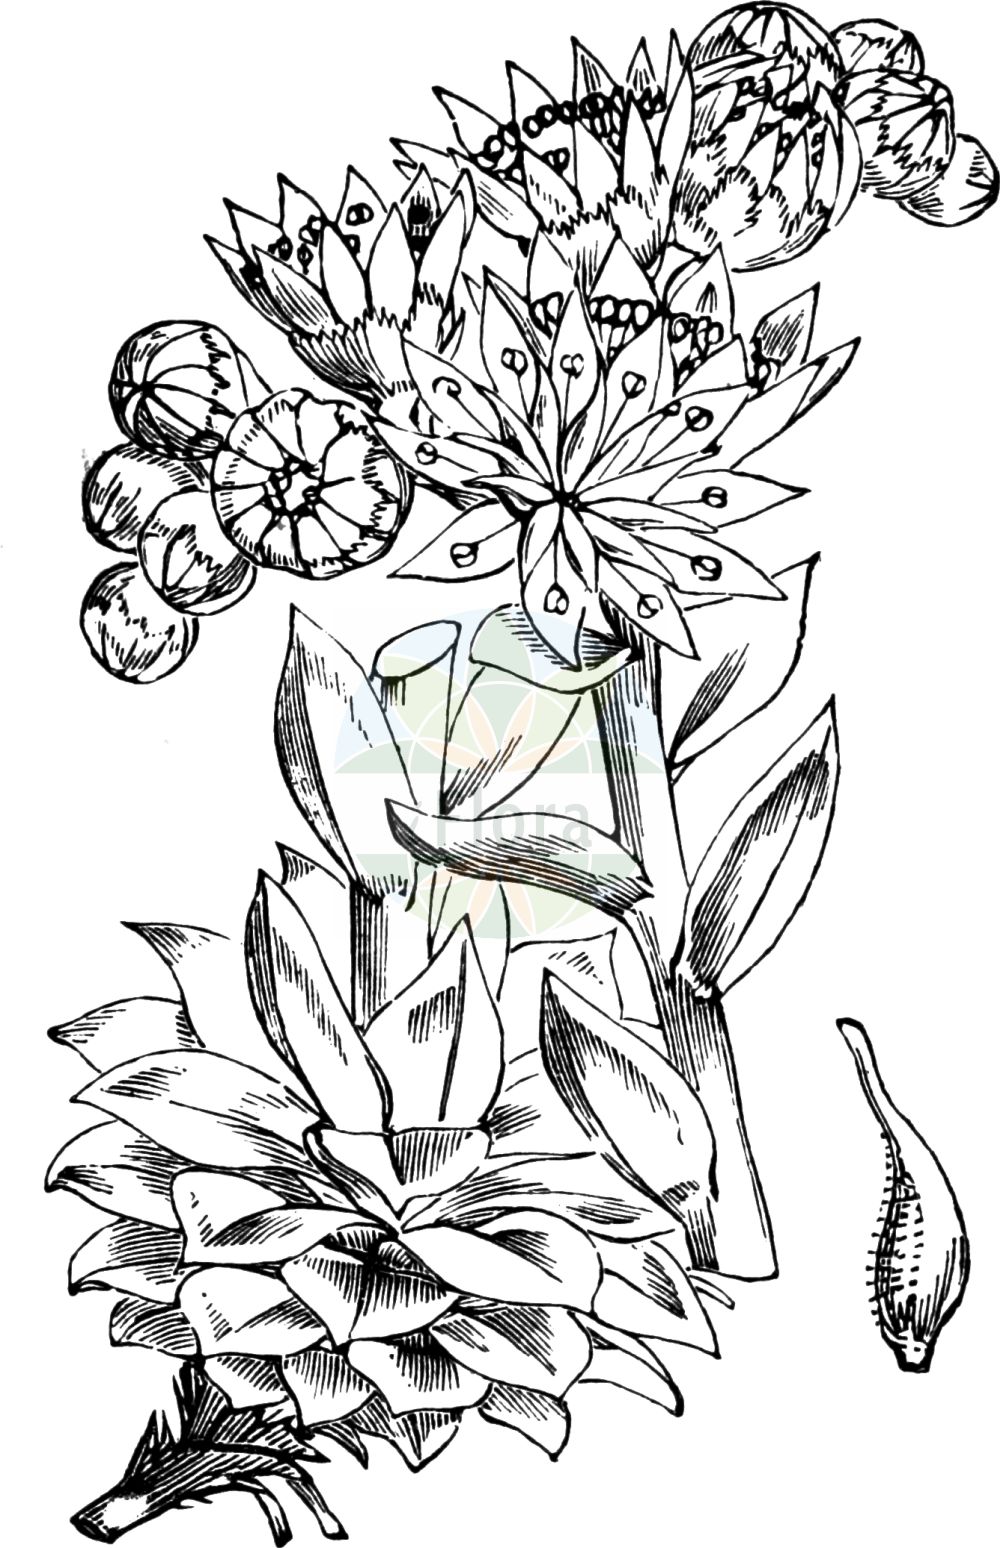 Historische Abbildung von Sempervivum tectorum (Dach-Hauswurz - House-leek). Das Bild zeigt Blatt, Bluete, Frucht und Same. ---- Historical Drawing of Sempervivum tectorum (Dach-Hauswurz - House-leek). The image is showing leaf, flower, fruit and seed.(Sempervivum tectorum,Dach-Hauswurz,House-leek,Sempervivum acuminatum,Sempervivum alpinum,Sempervivum andreanum,Sempervivum assimile,Sempervivum ballsii,Sempervivum boutignyanum,Sempervivum clusianum,Sempervivum glaucum,Sempervivum mettenianum,Sempervivum schottii,Sempervivum tectorum,Sempervivum tectorum var. rhenanum,Dach-Hauswurz,Alpen-Dachhauswurz,Gewoehnliche Hauswurz,House-leek,Common Houseleek,Hen-and-Chickens,Sempervivum,Hauswurz,Houseleek,Crassulaceae,Dickblattgewächse,Stonecrop family,Blatt,Bluete,Frucht,Same,leaf,flower,fruit,seed,Fitch et al. (1880))